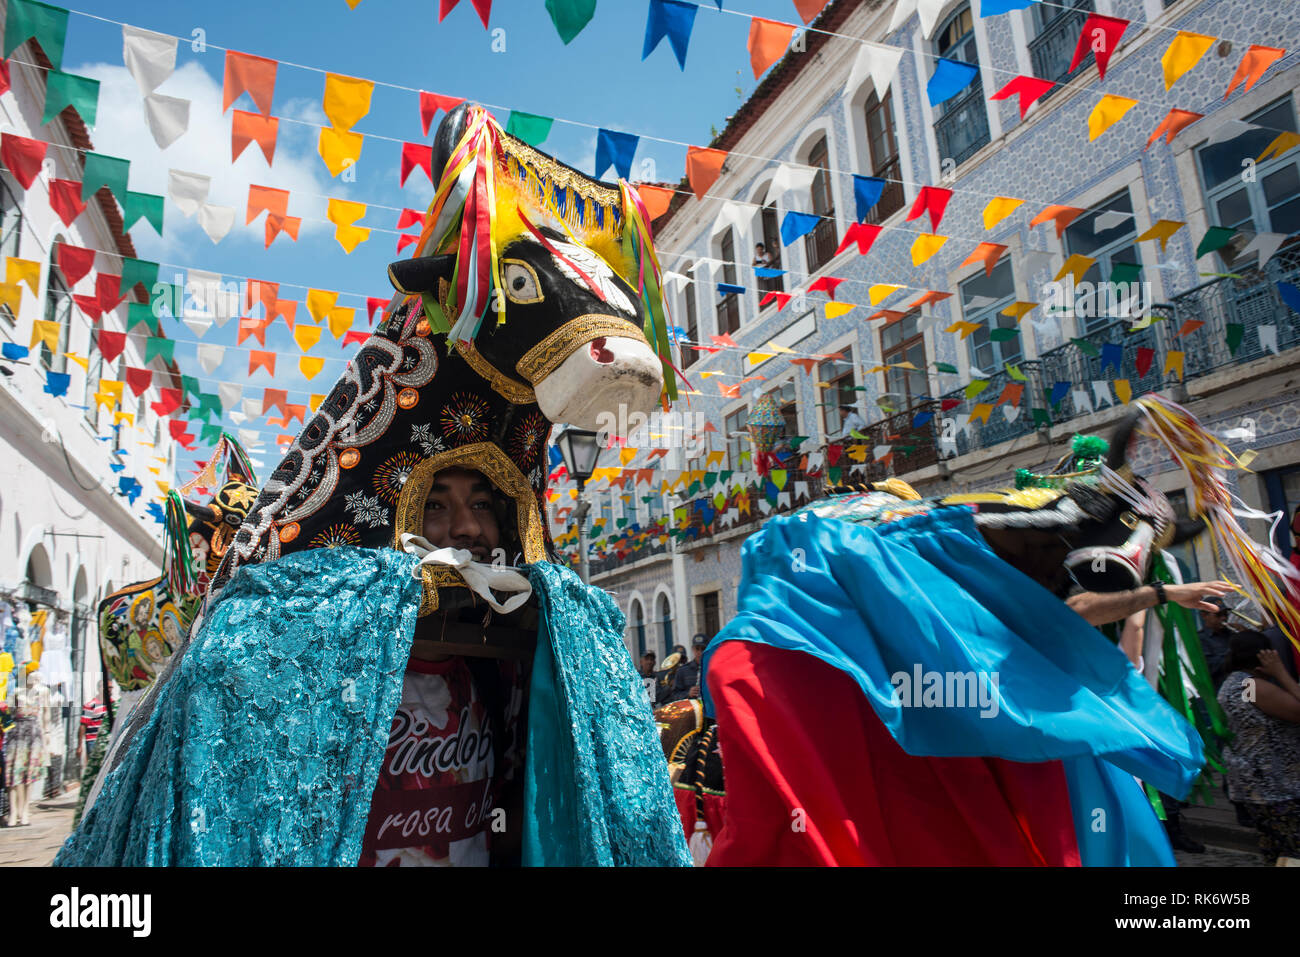 Sao Luis, l'Etat du Maranhao, Brésil - Juillet 8, 2016 : ville historique se prépare pour la traditionnelle fête de taureaux Banque D'Images